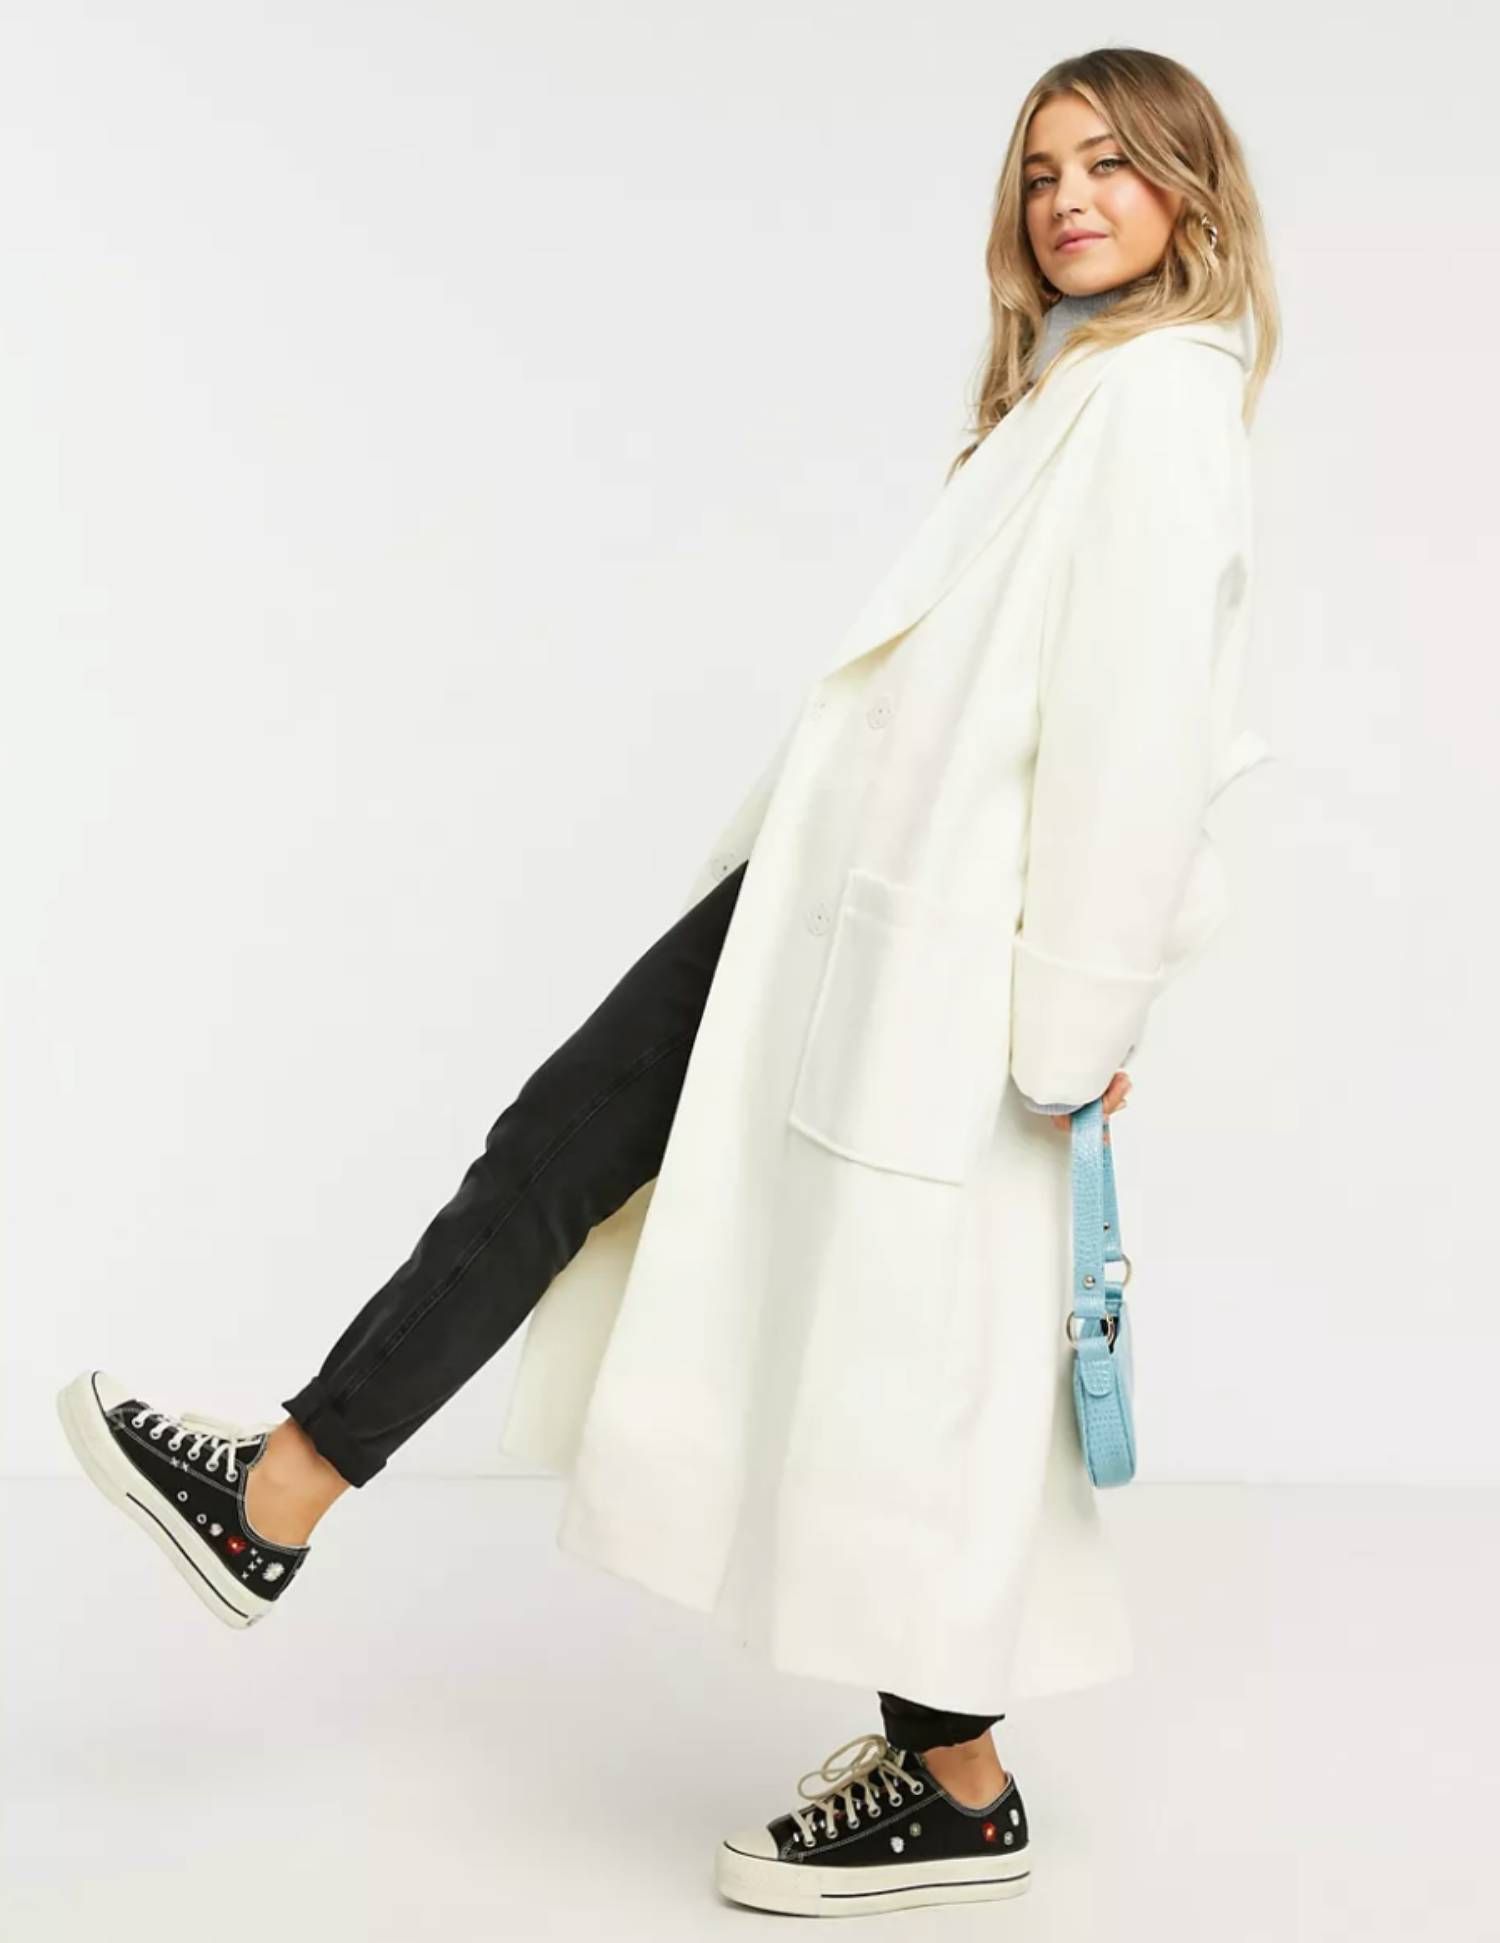 Consigue un look sofisticado con un nuevo abrigo blanco largo esta